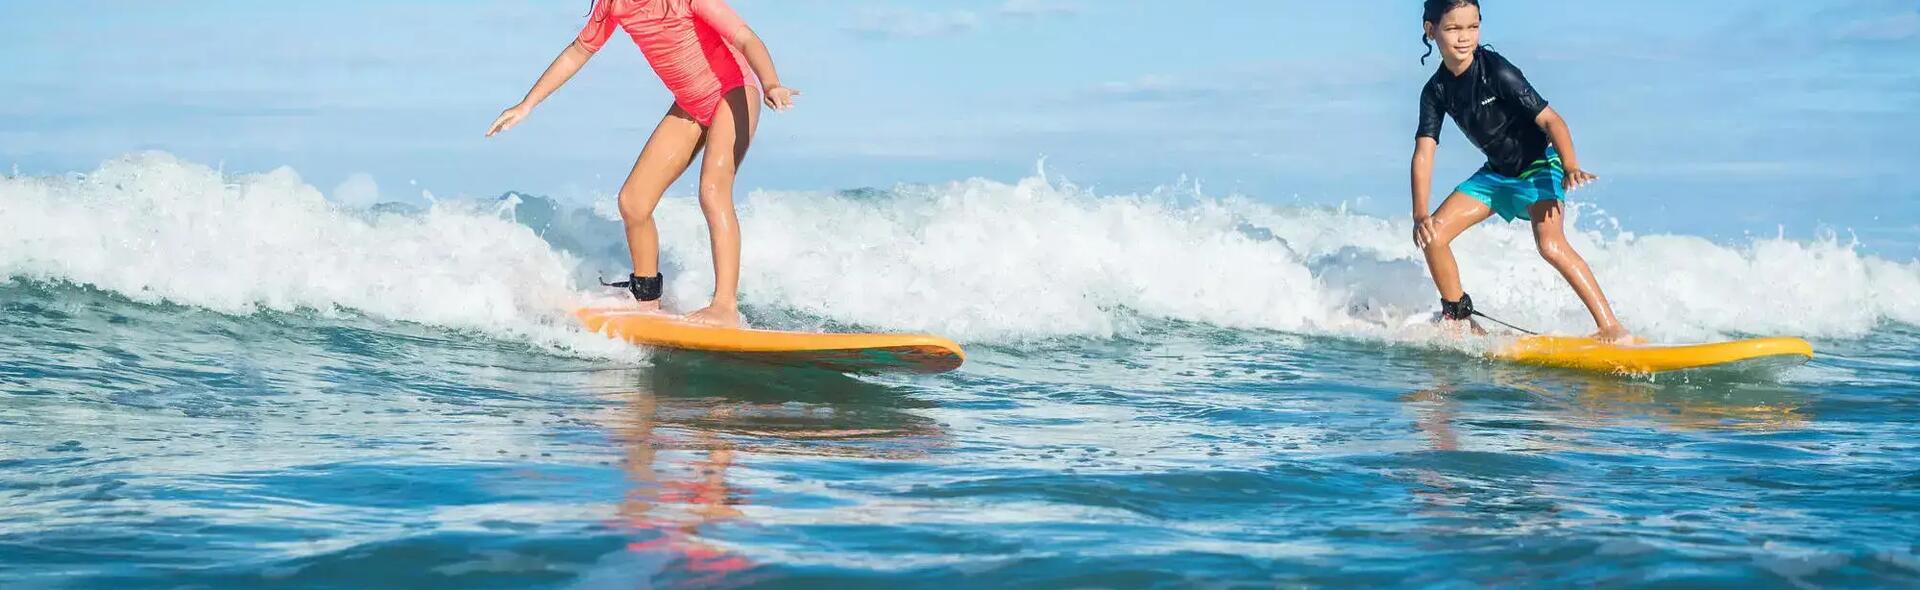 Goofy oder Regular - Welcher Fuß steht beim Surfen vorne?